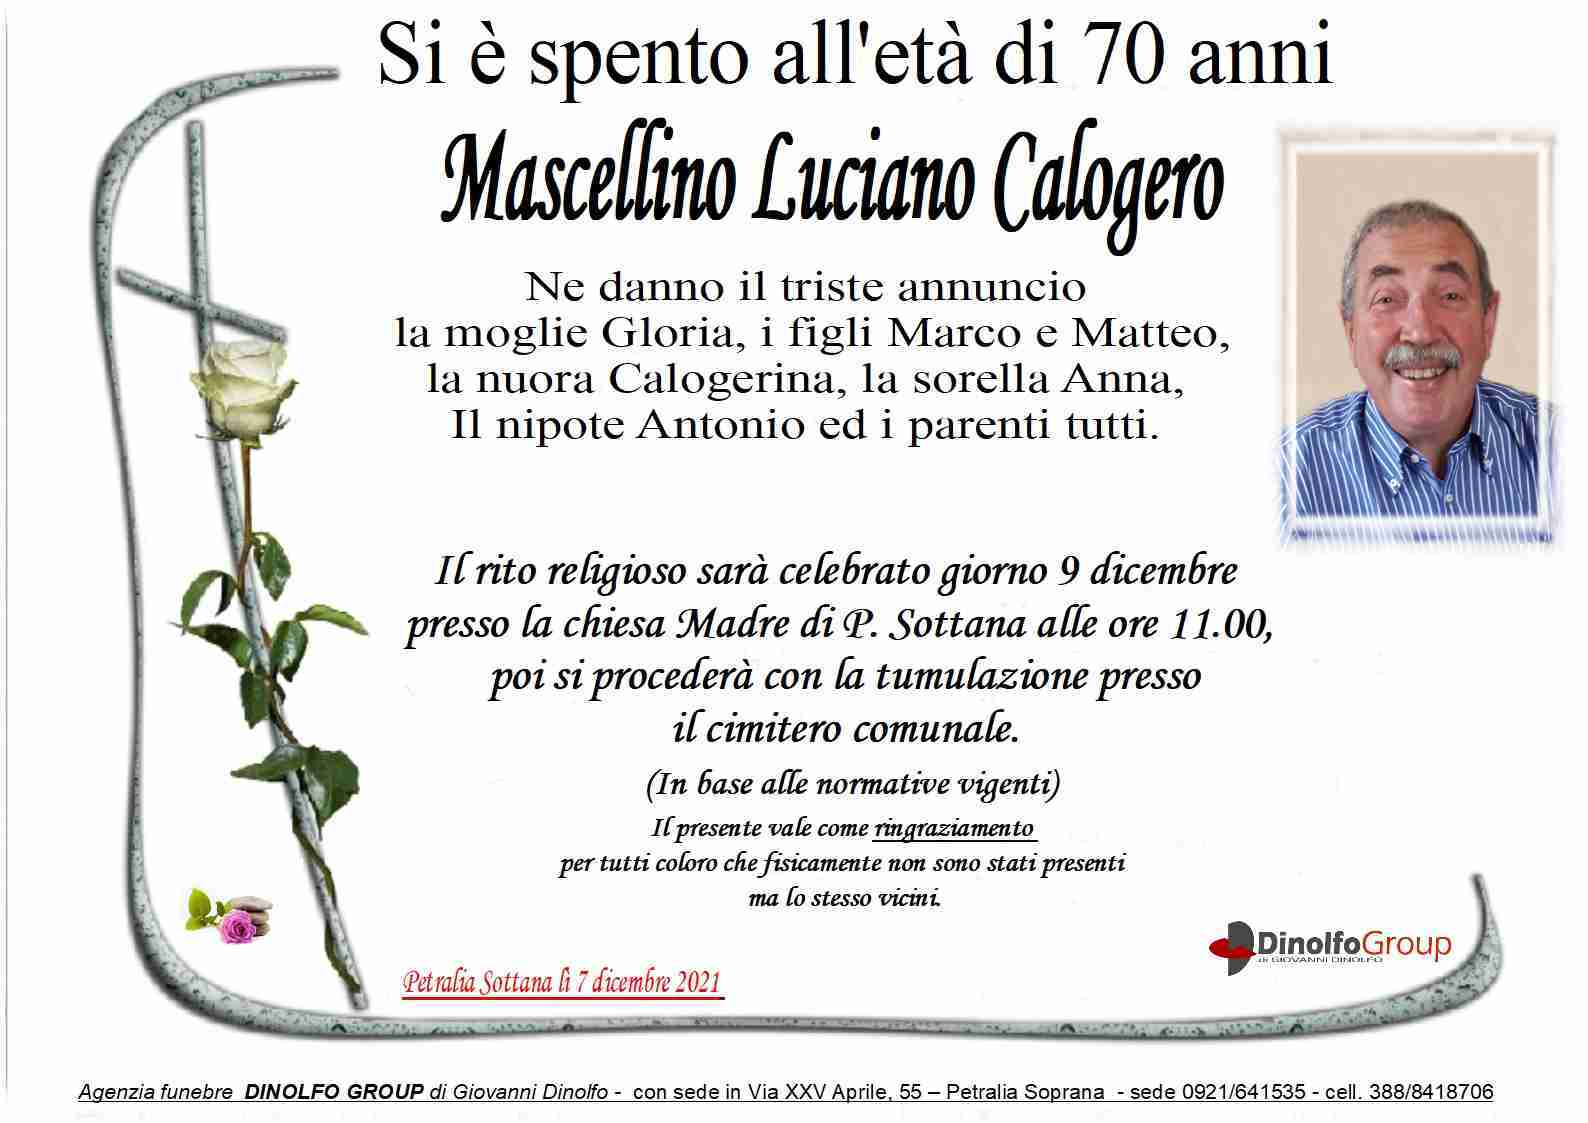 Luciano Calogero Mascellino